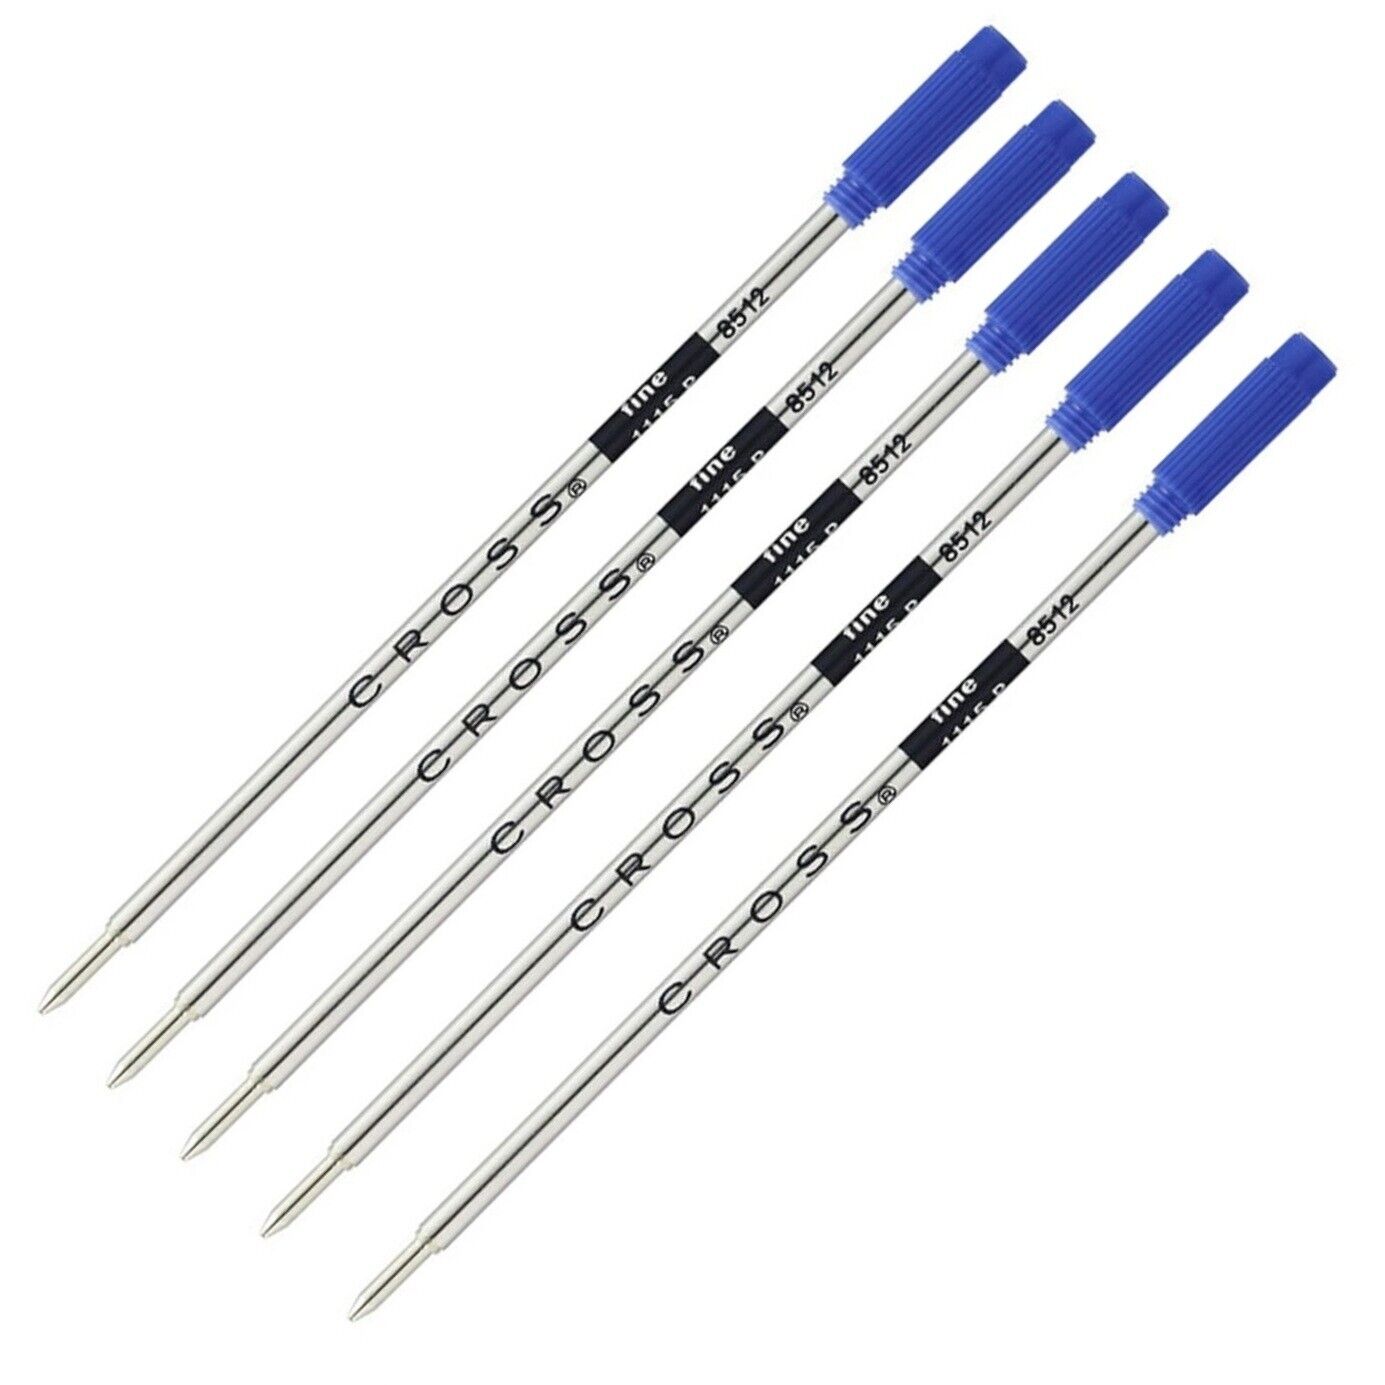 Genuine Cross Ballpoint Pen Refills, 5 pk, Blue Fine, Bulk Packed, New, #8512